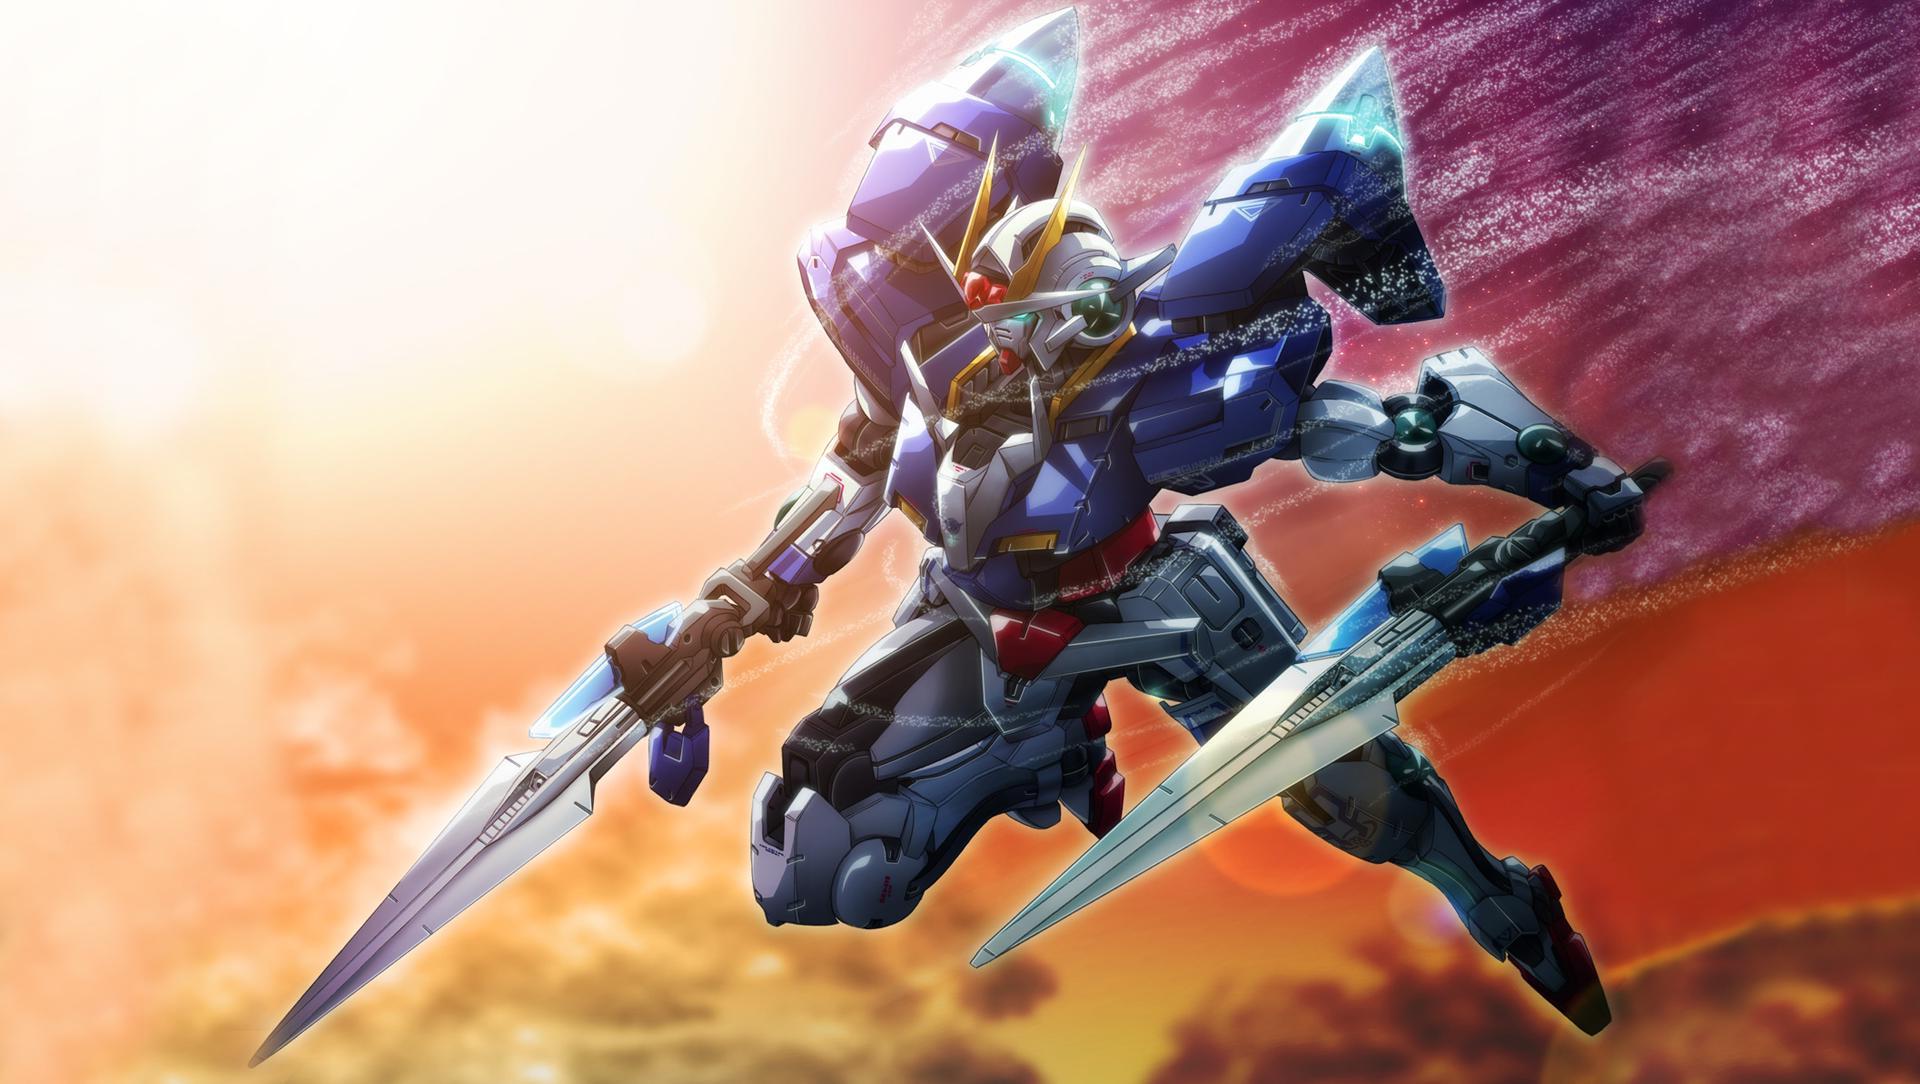 Gundam, механизм, аниме - обои на рабочий стол